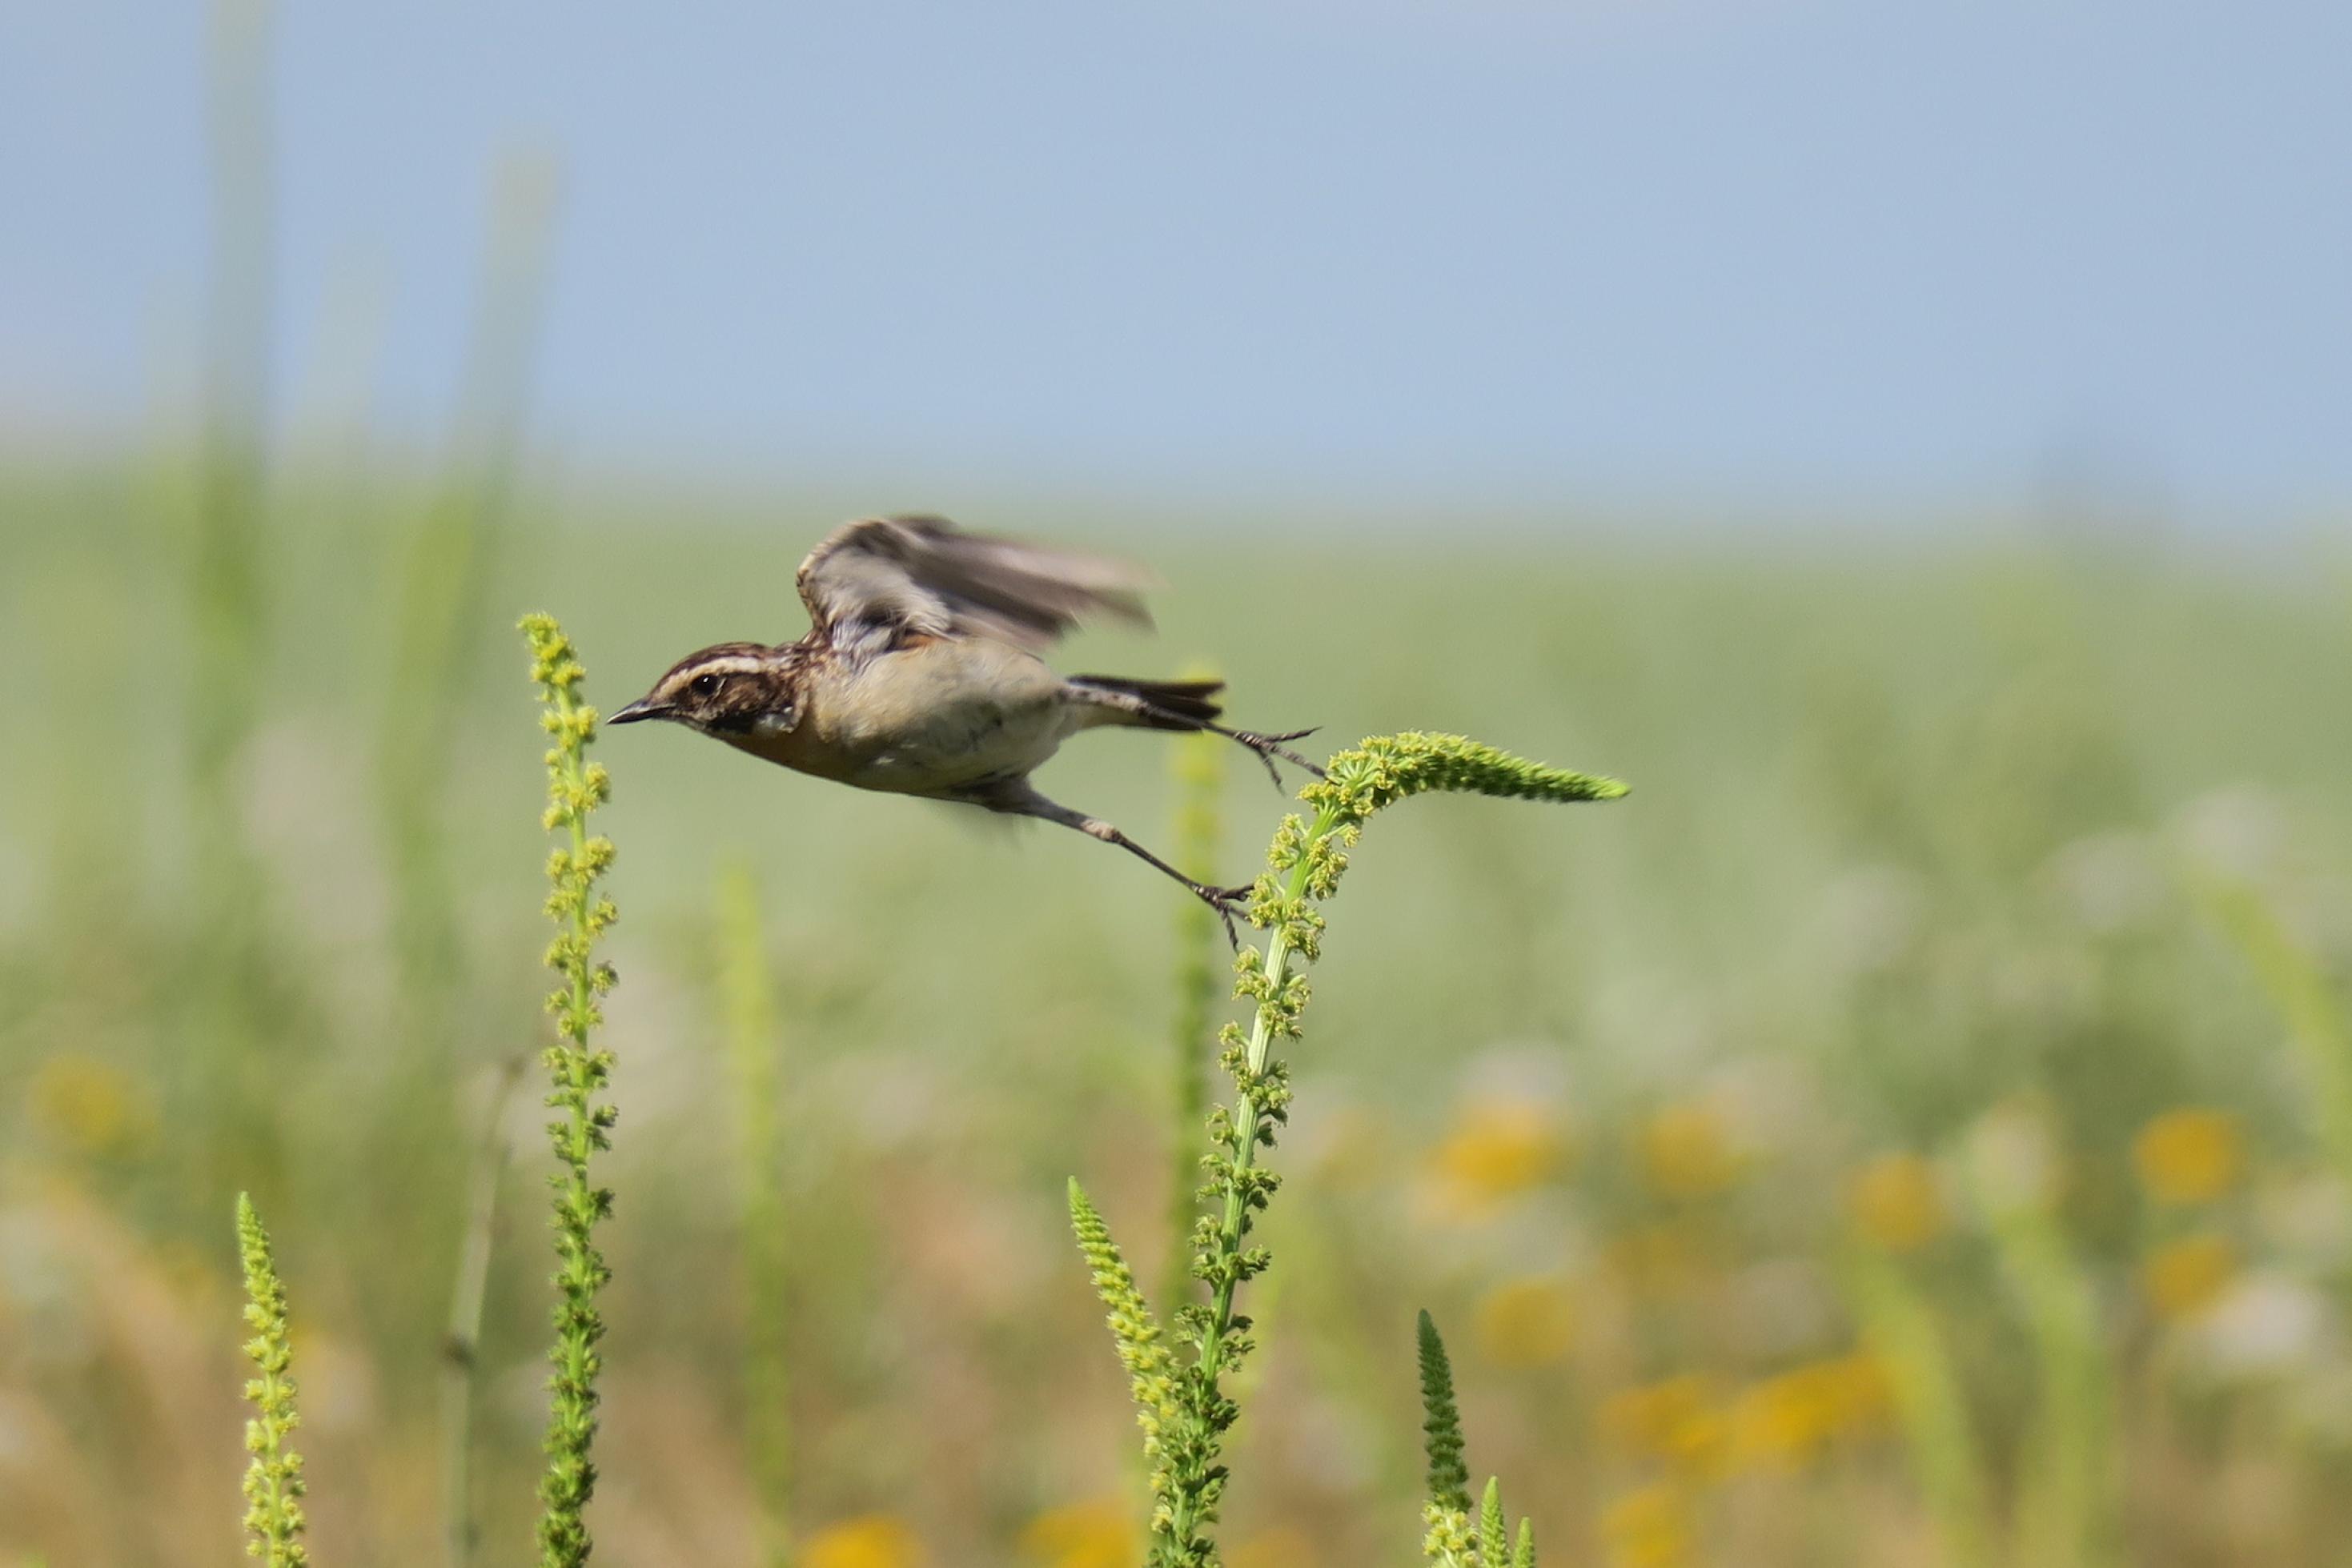 Das Bild zeigt den Vogel beim Abflug von einem Pflanzenstengel.